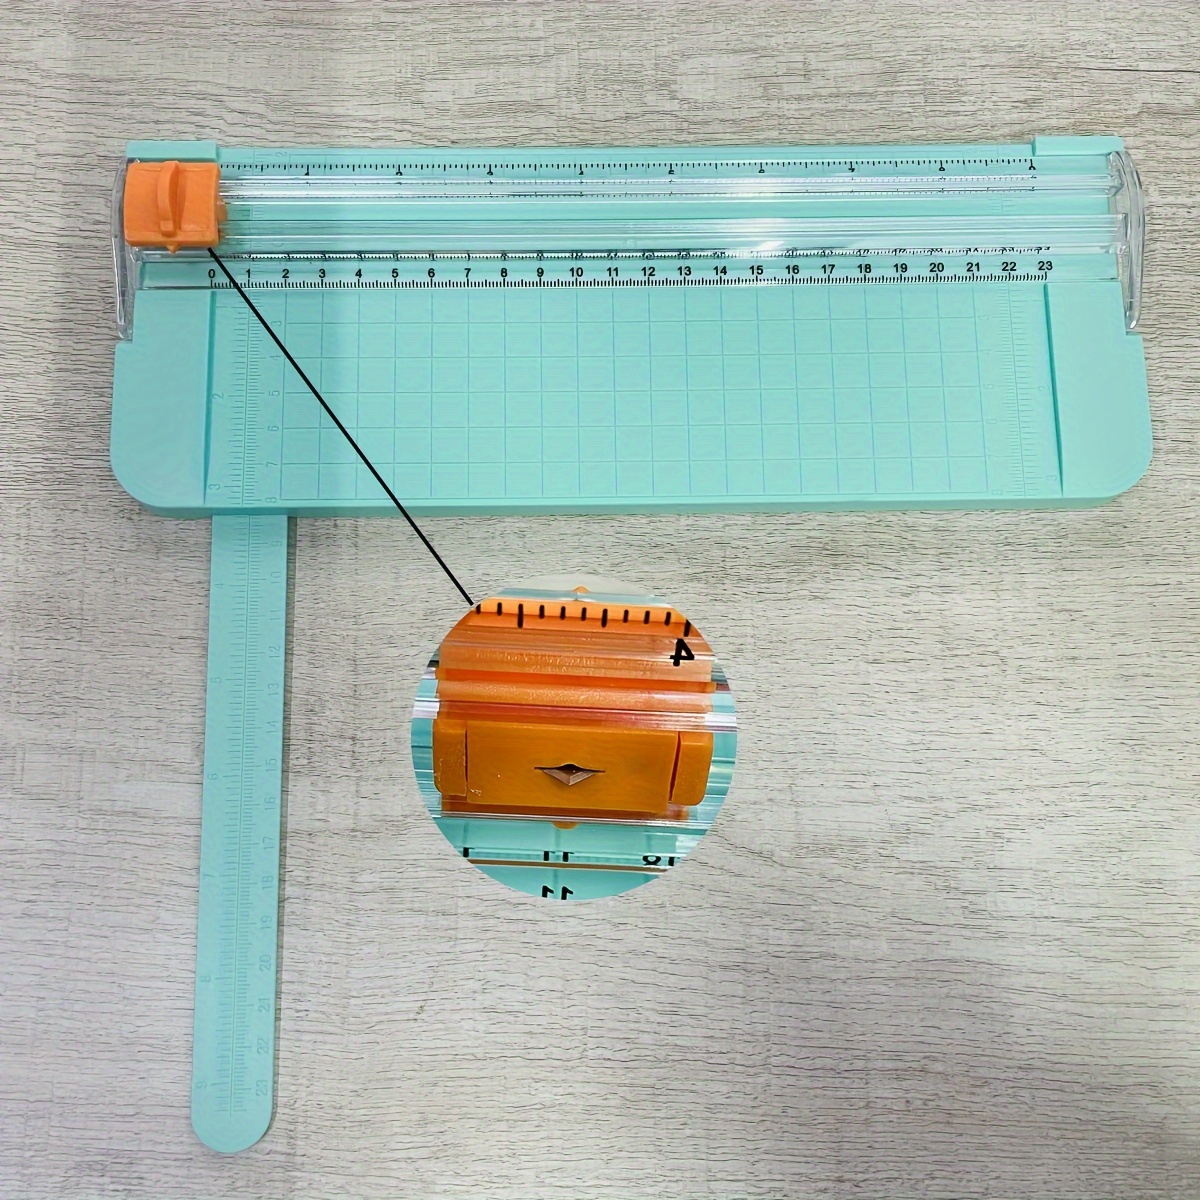 Paper Cutter A4 Craft Titanium Paper Trimmer Scrapbooking - Temu